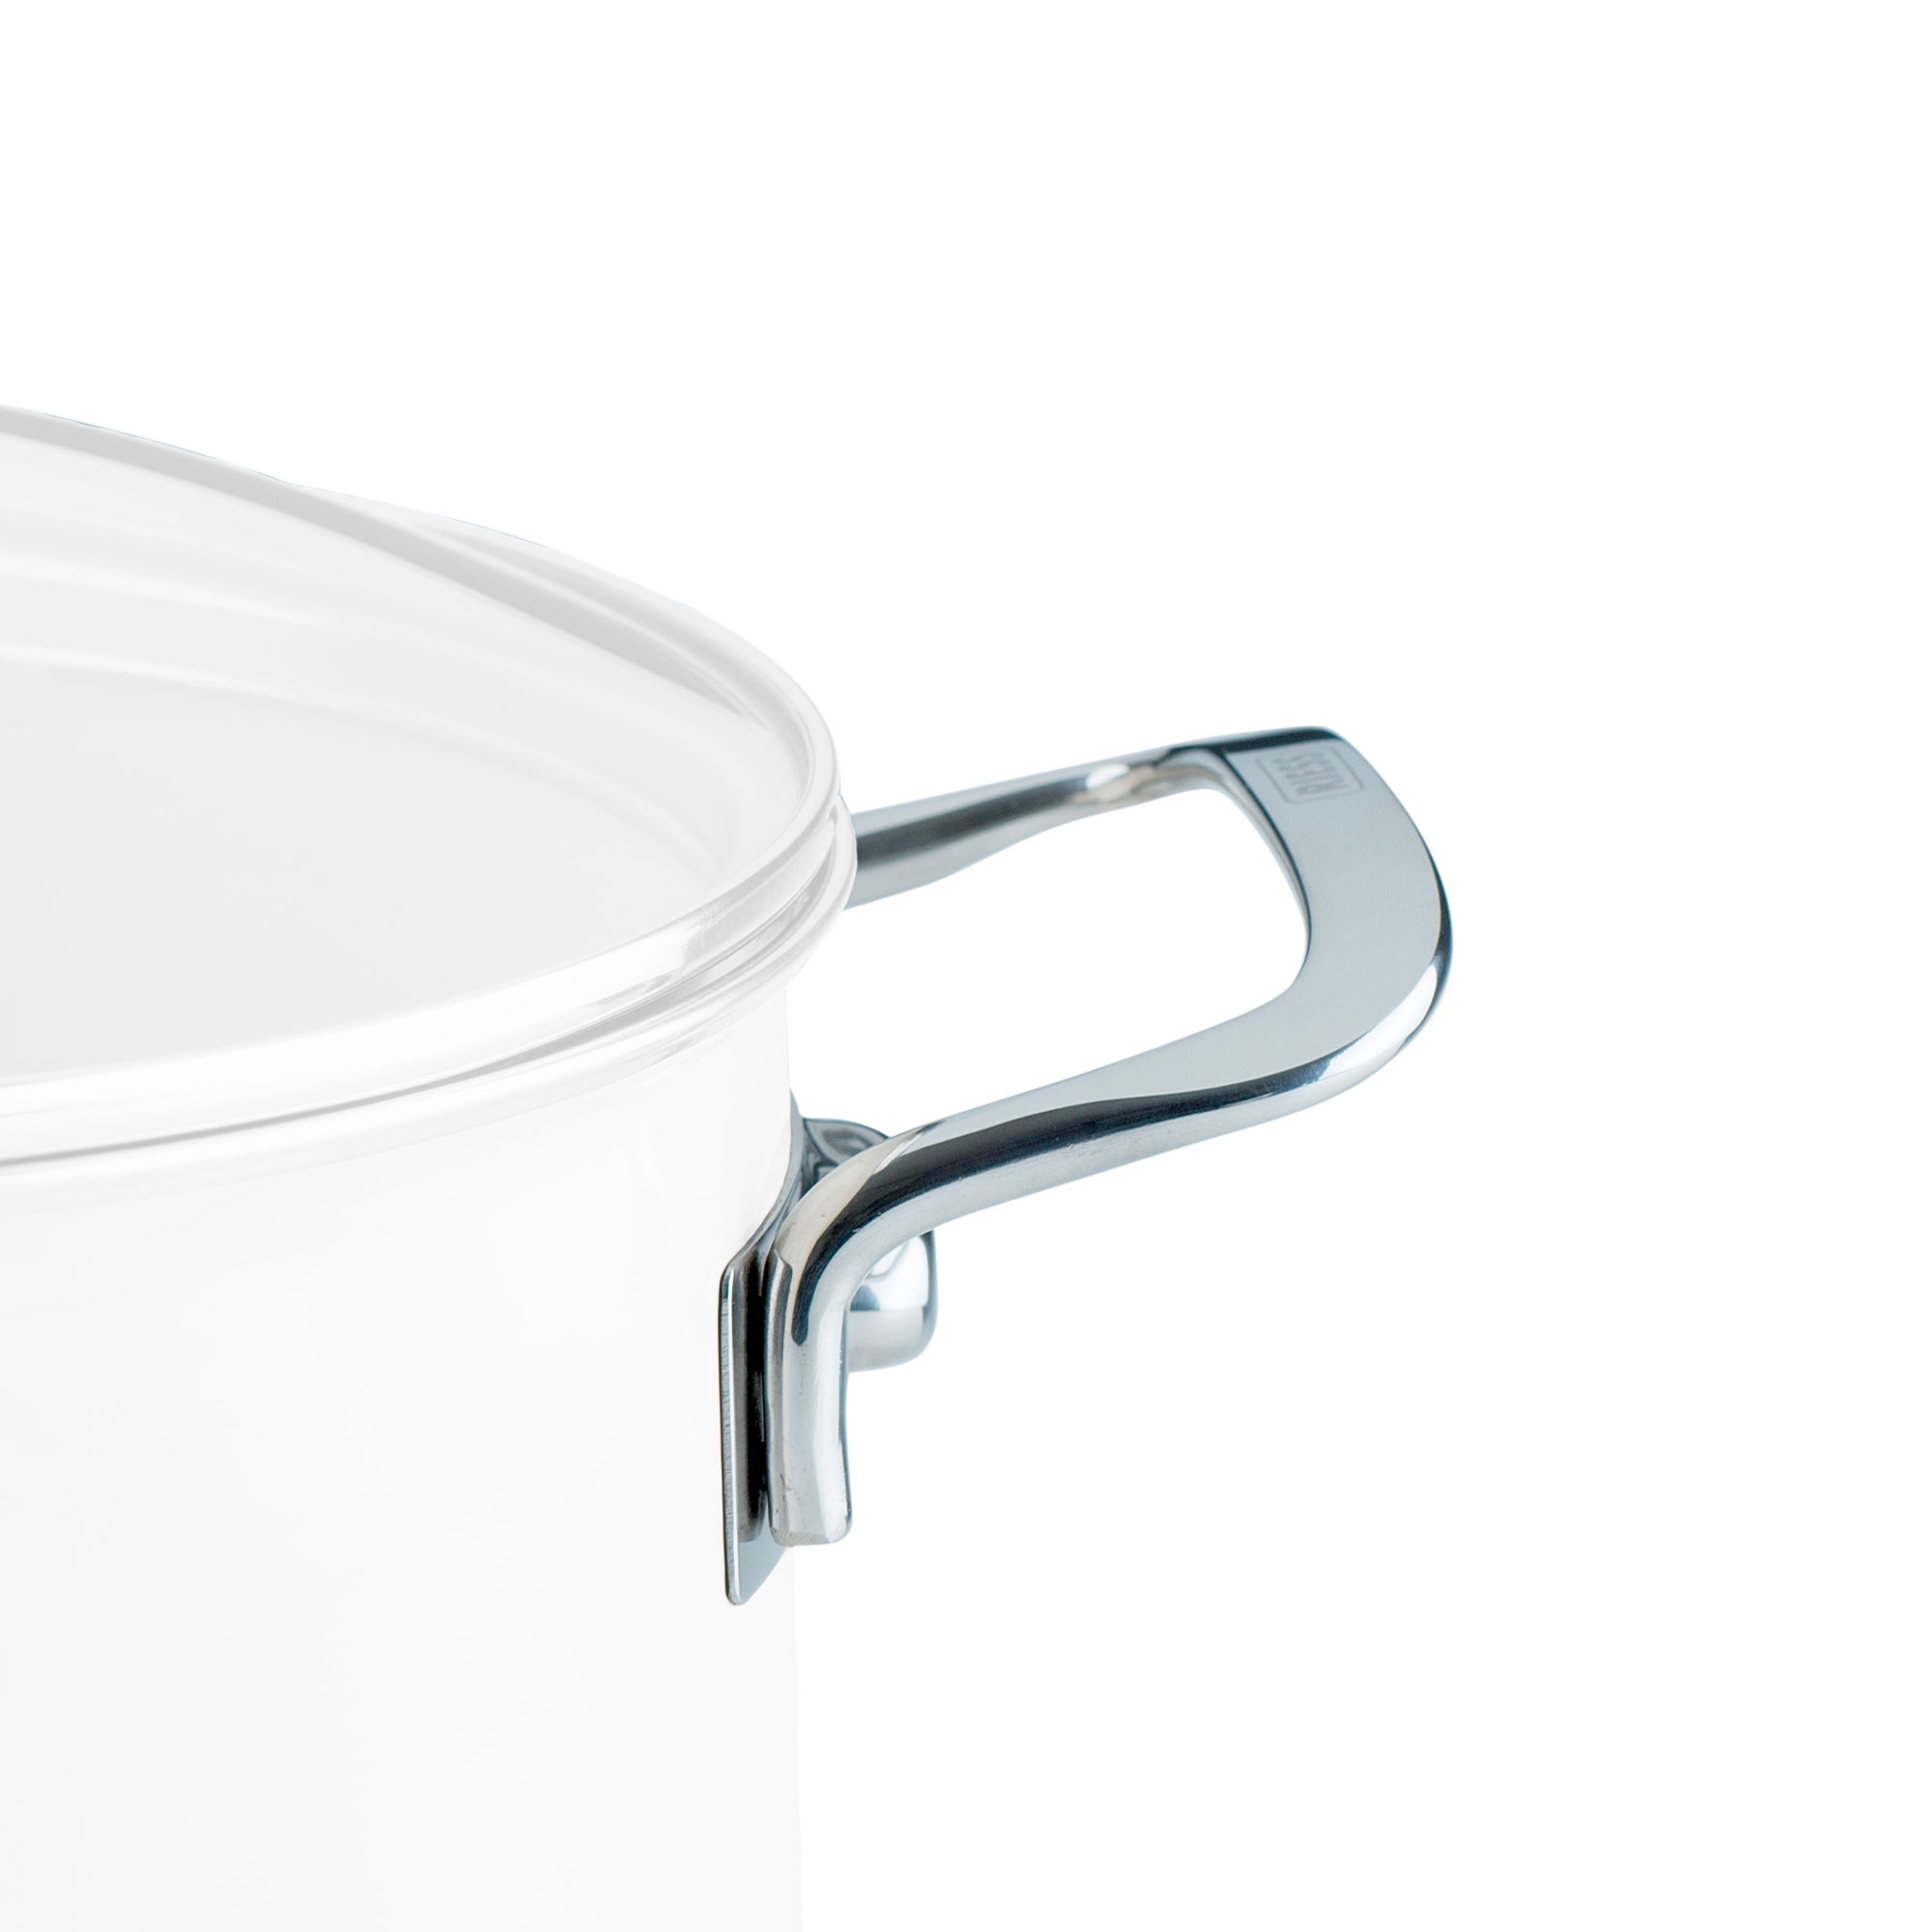 Riess NOUVELLE - replacement side handle Nouvelle for pot/casserole 16 cm